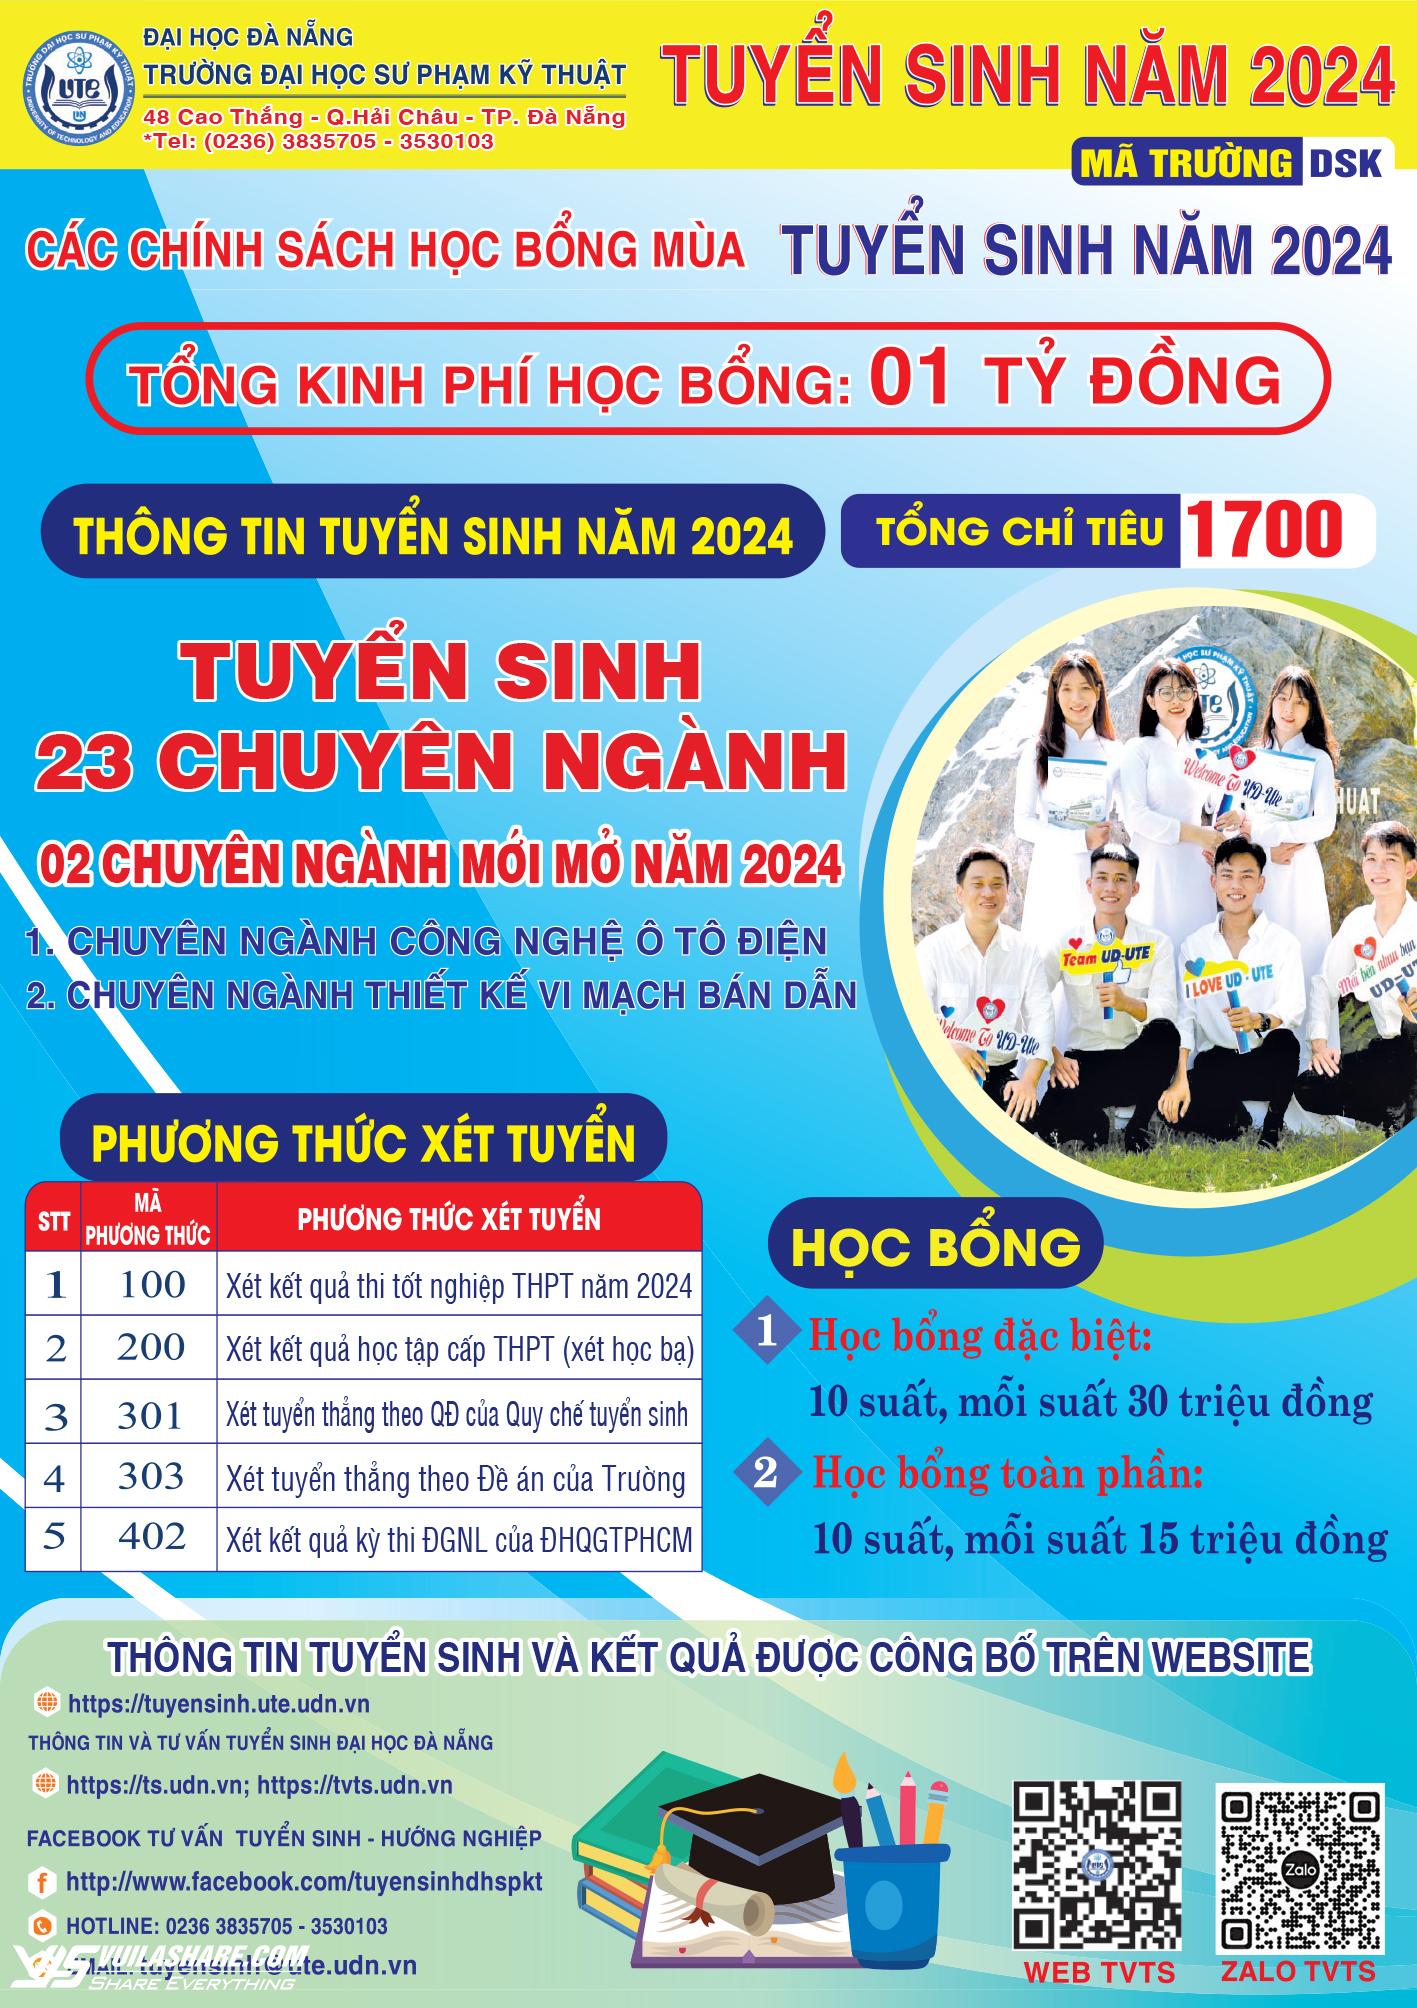 Trường ĐH Sư phạm kỹ thuật Đà Nẵng mở 2 chuyên ngành mới năm 2024- Ảnh 1.